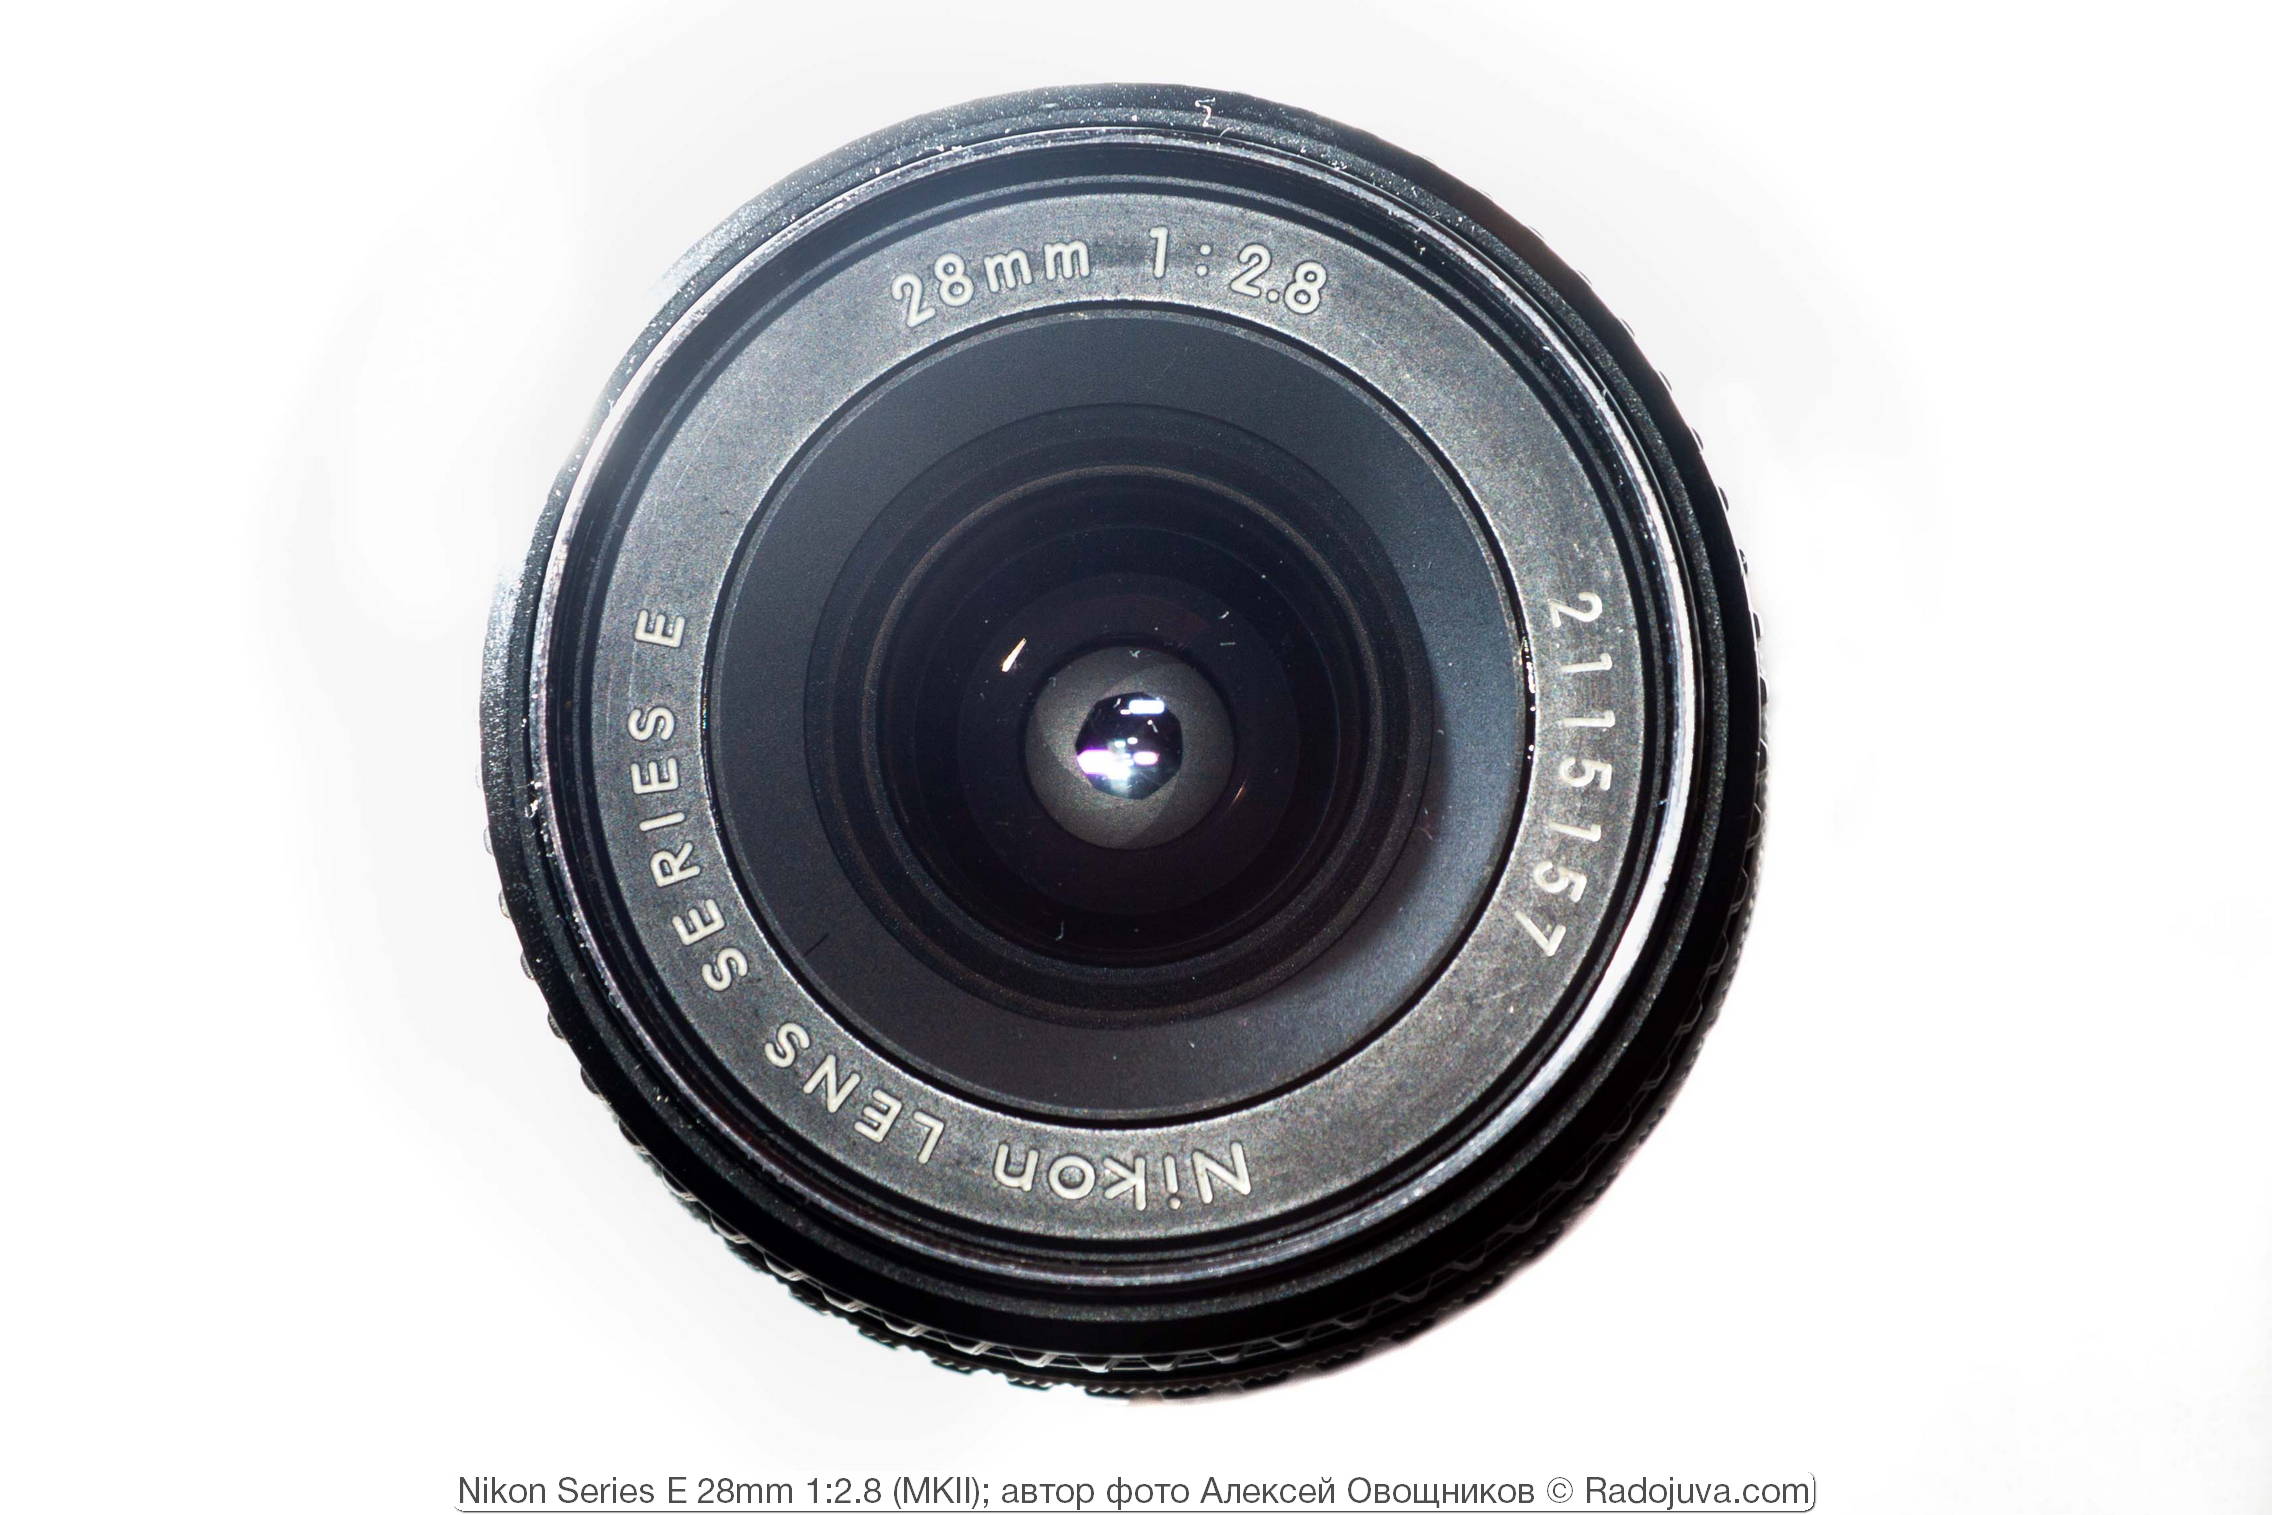 Nikon Series E 28mm 1: 2.8 MKII